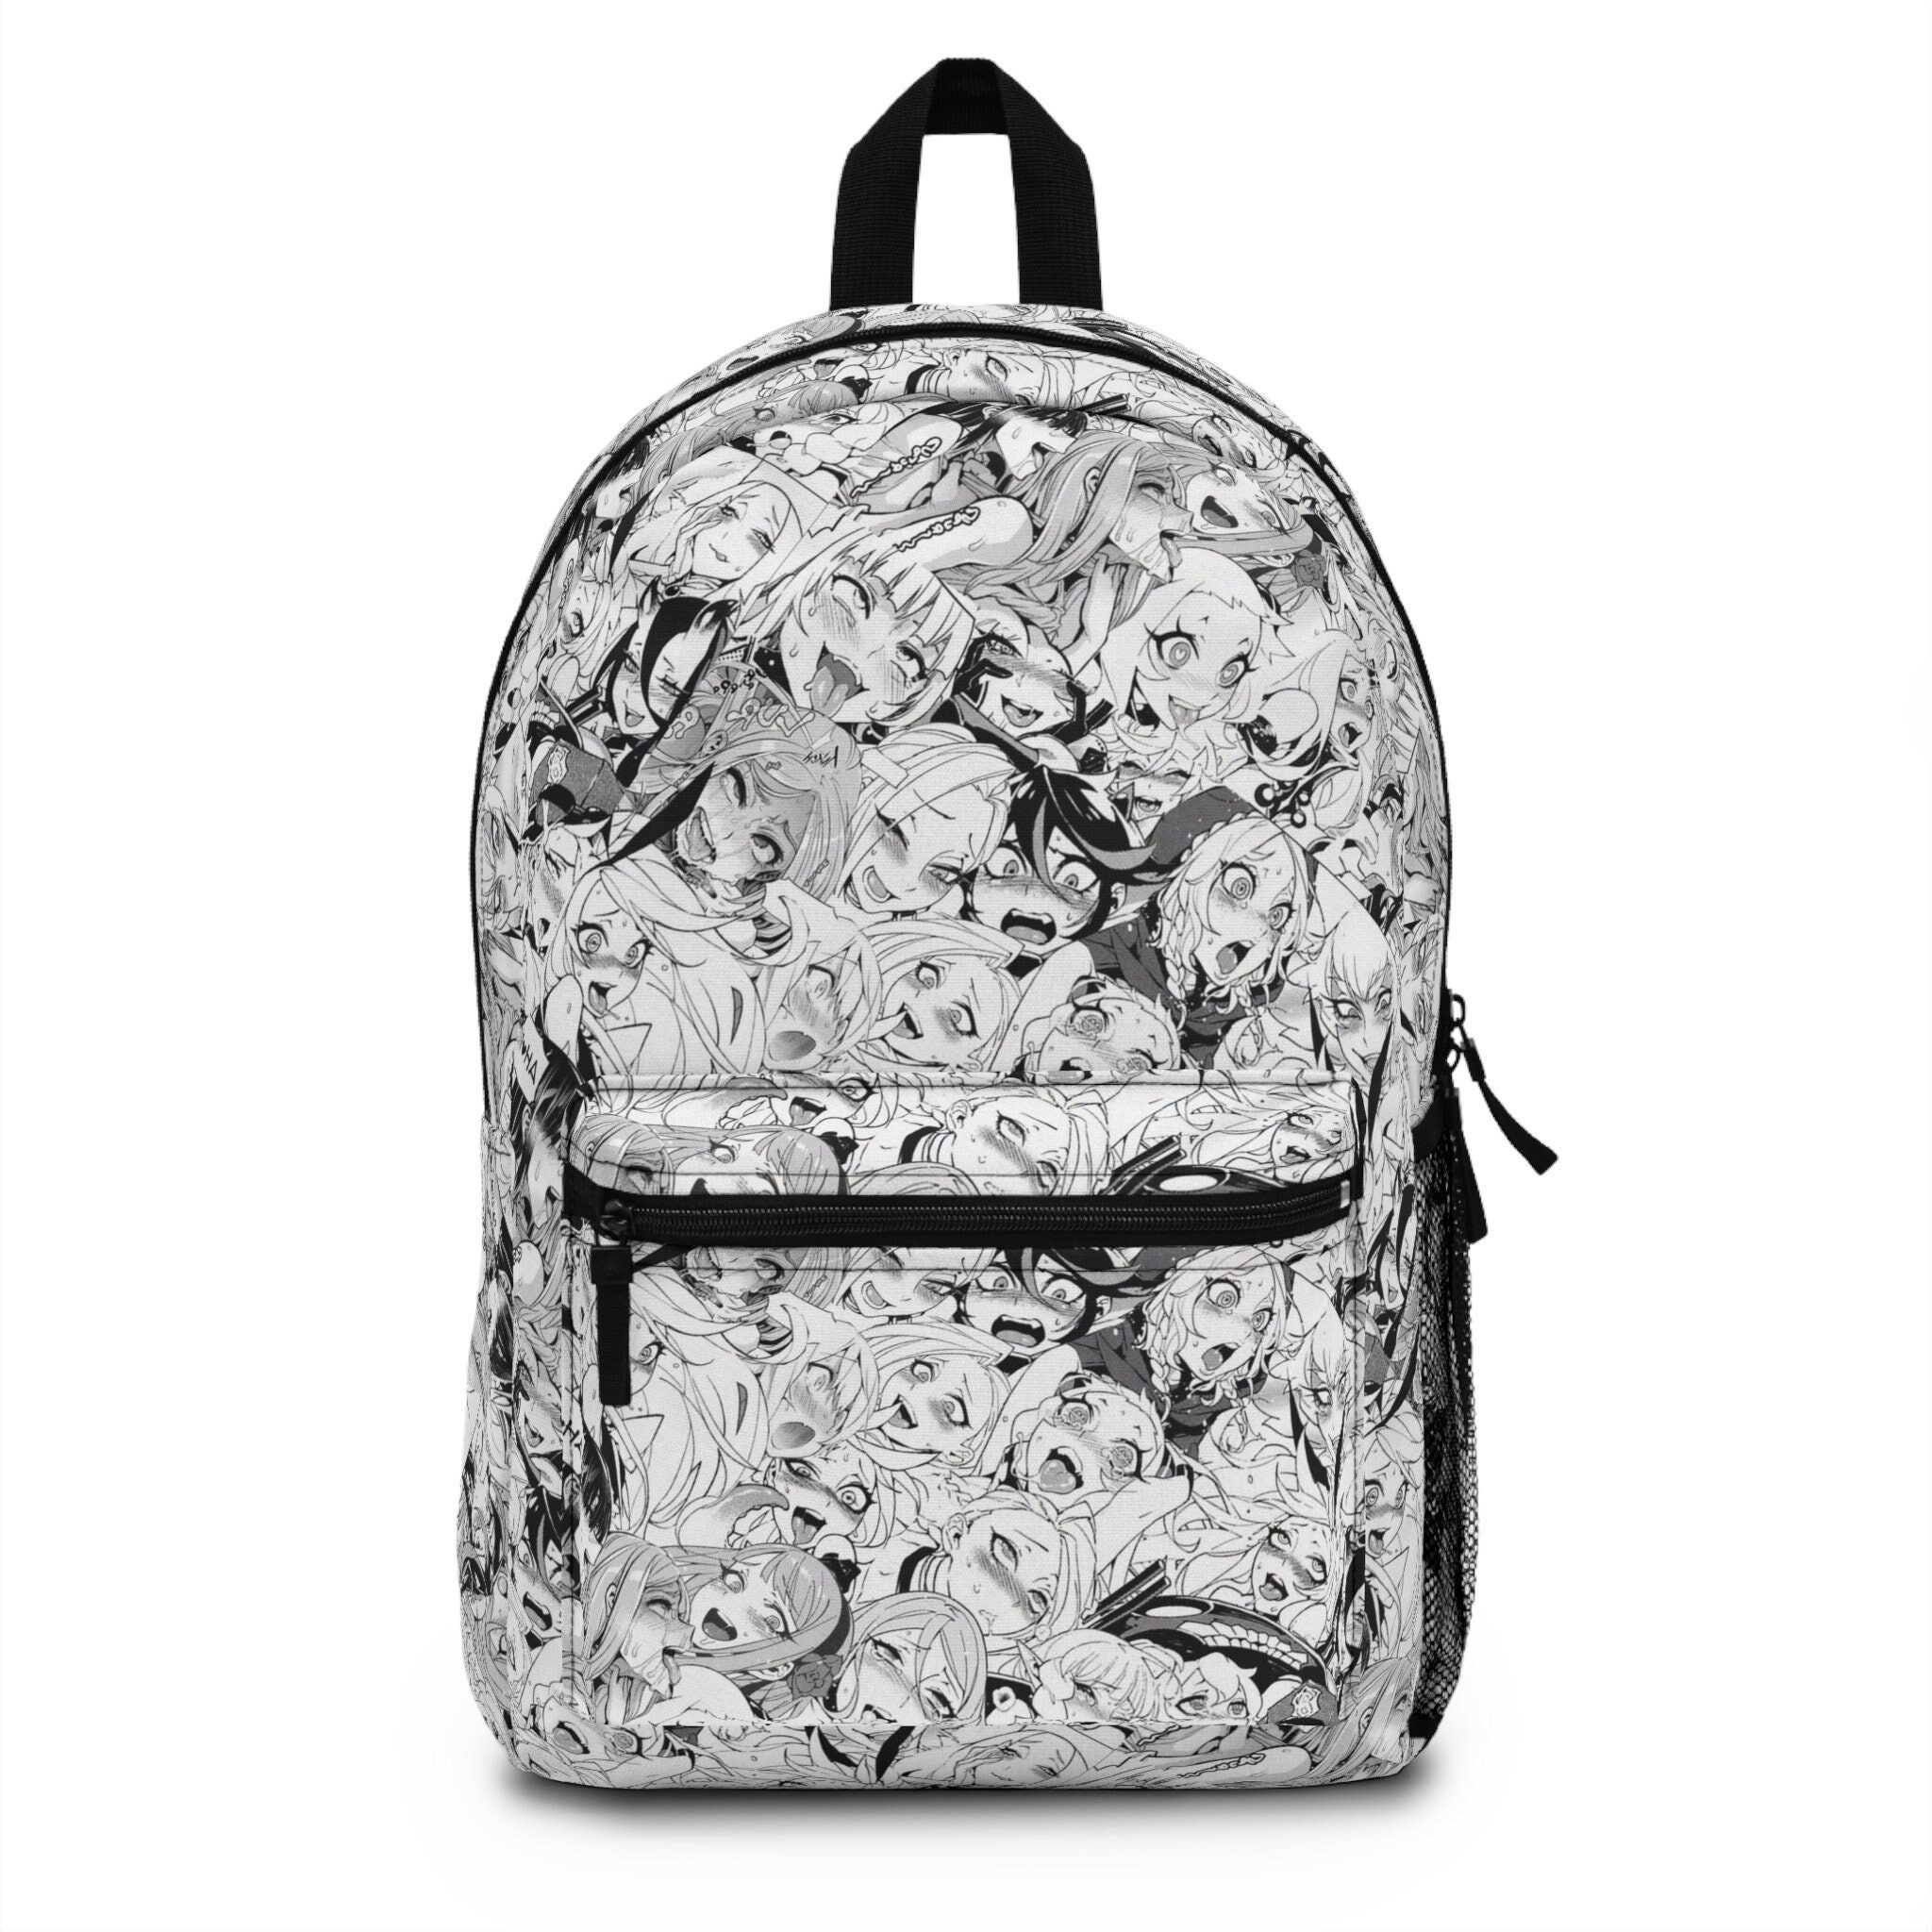 Buy Lanrena Anime Backpack Student School Bag Waterproof Travel Teens  Laptop Bagpack Style A Online at desertcartINDIA